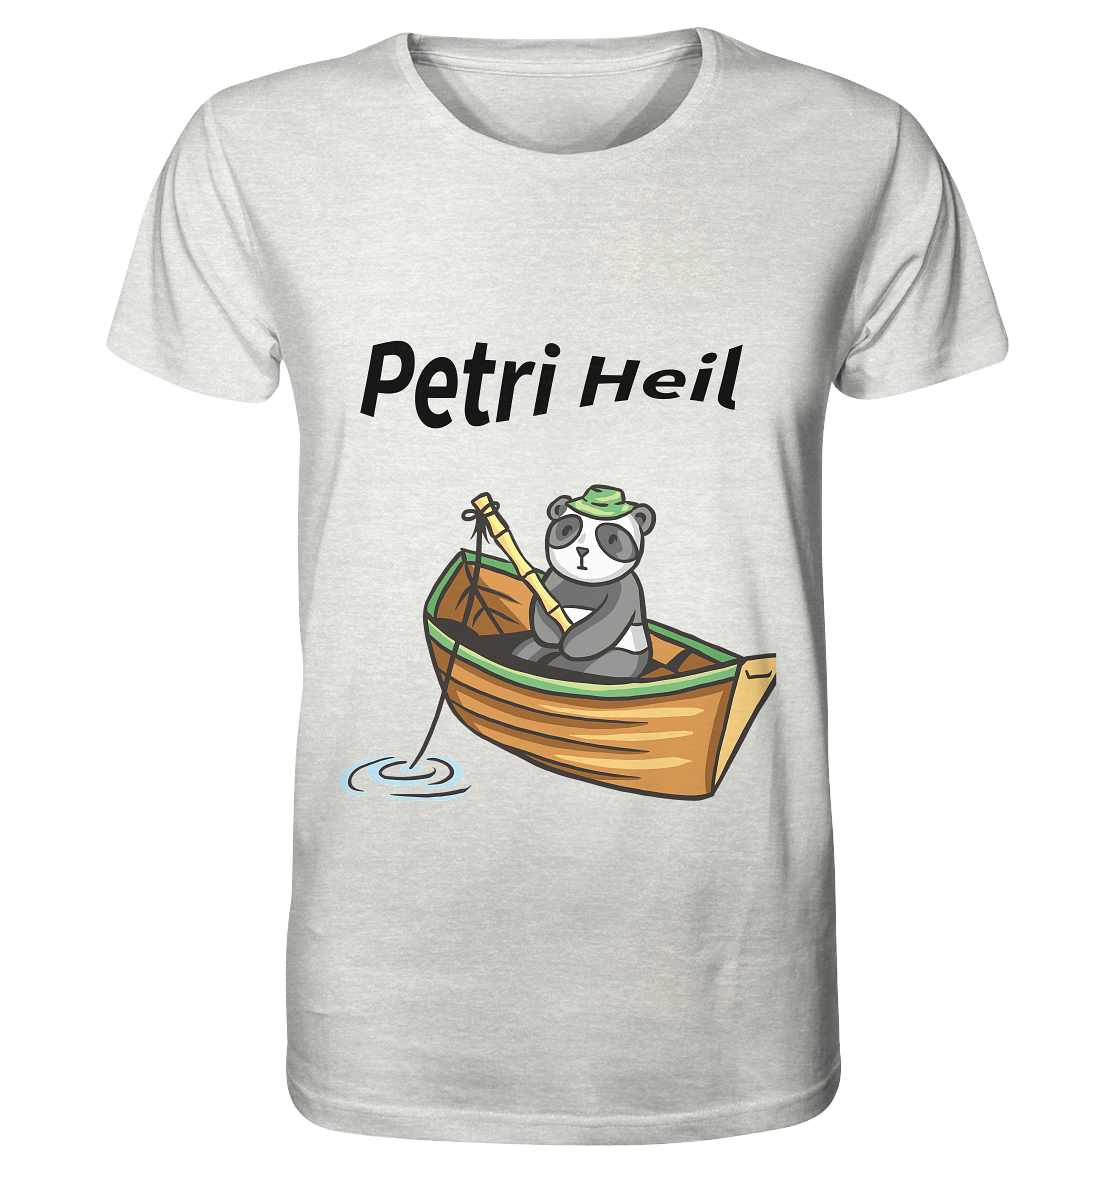 Petri-Heil-Bär - Organic Shirt (meliert) - Online Kaufhaus München